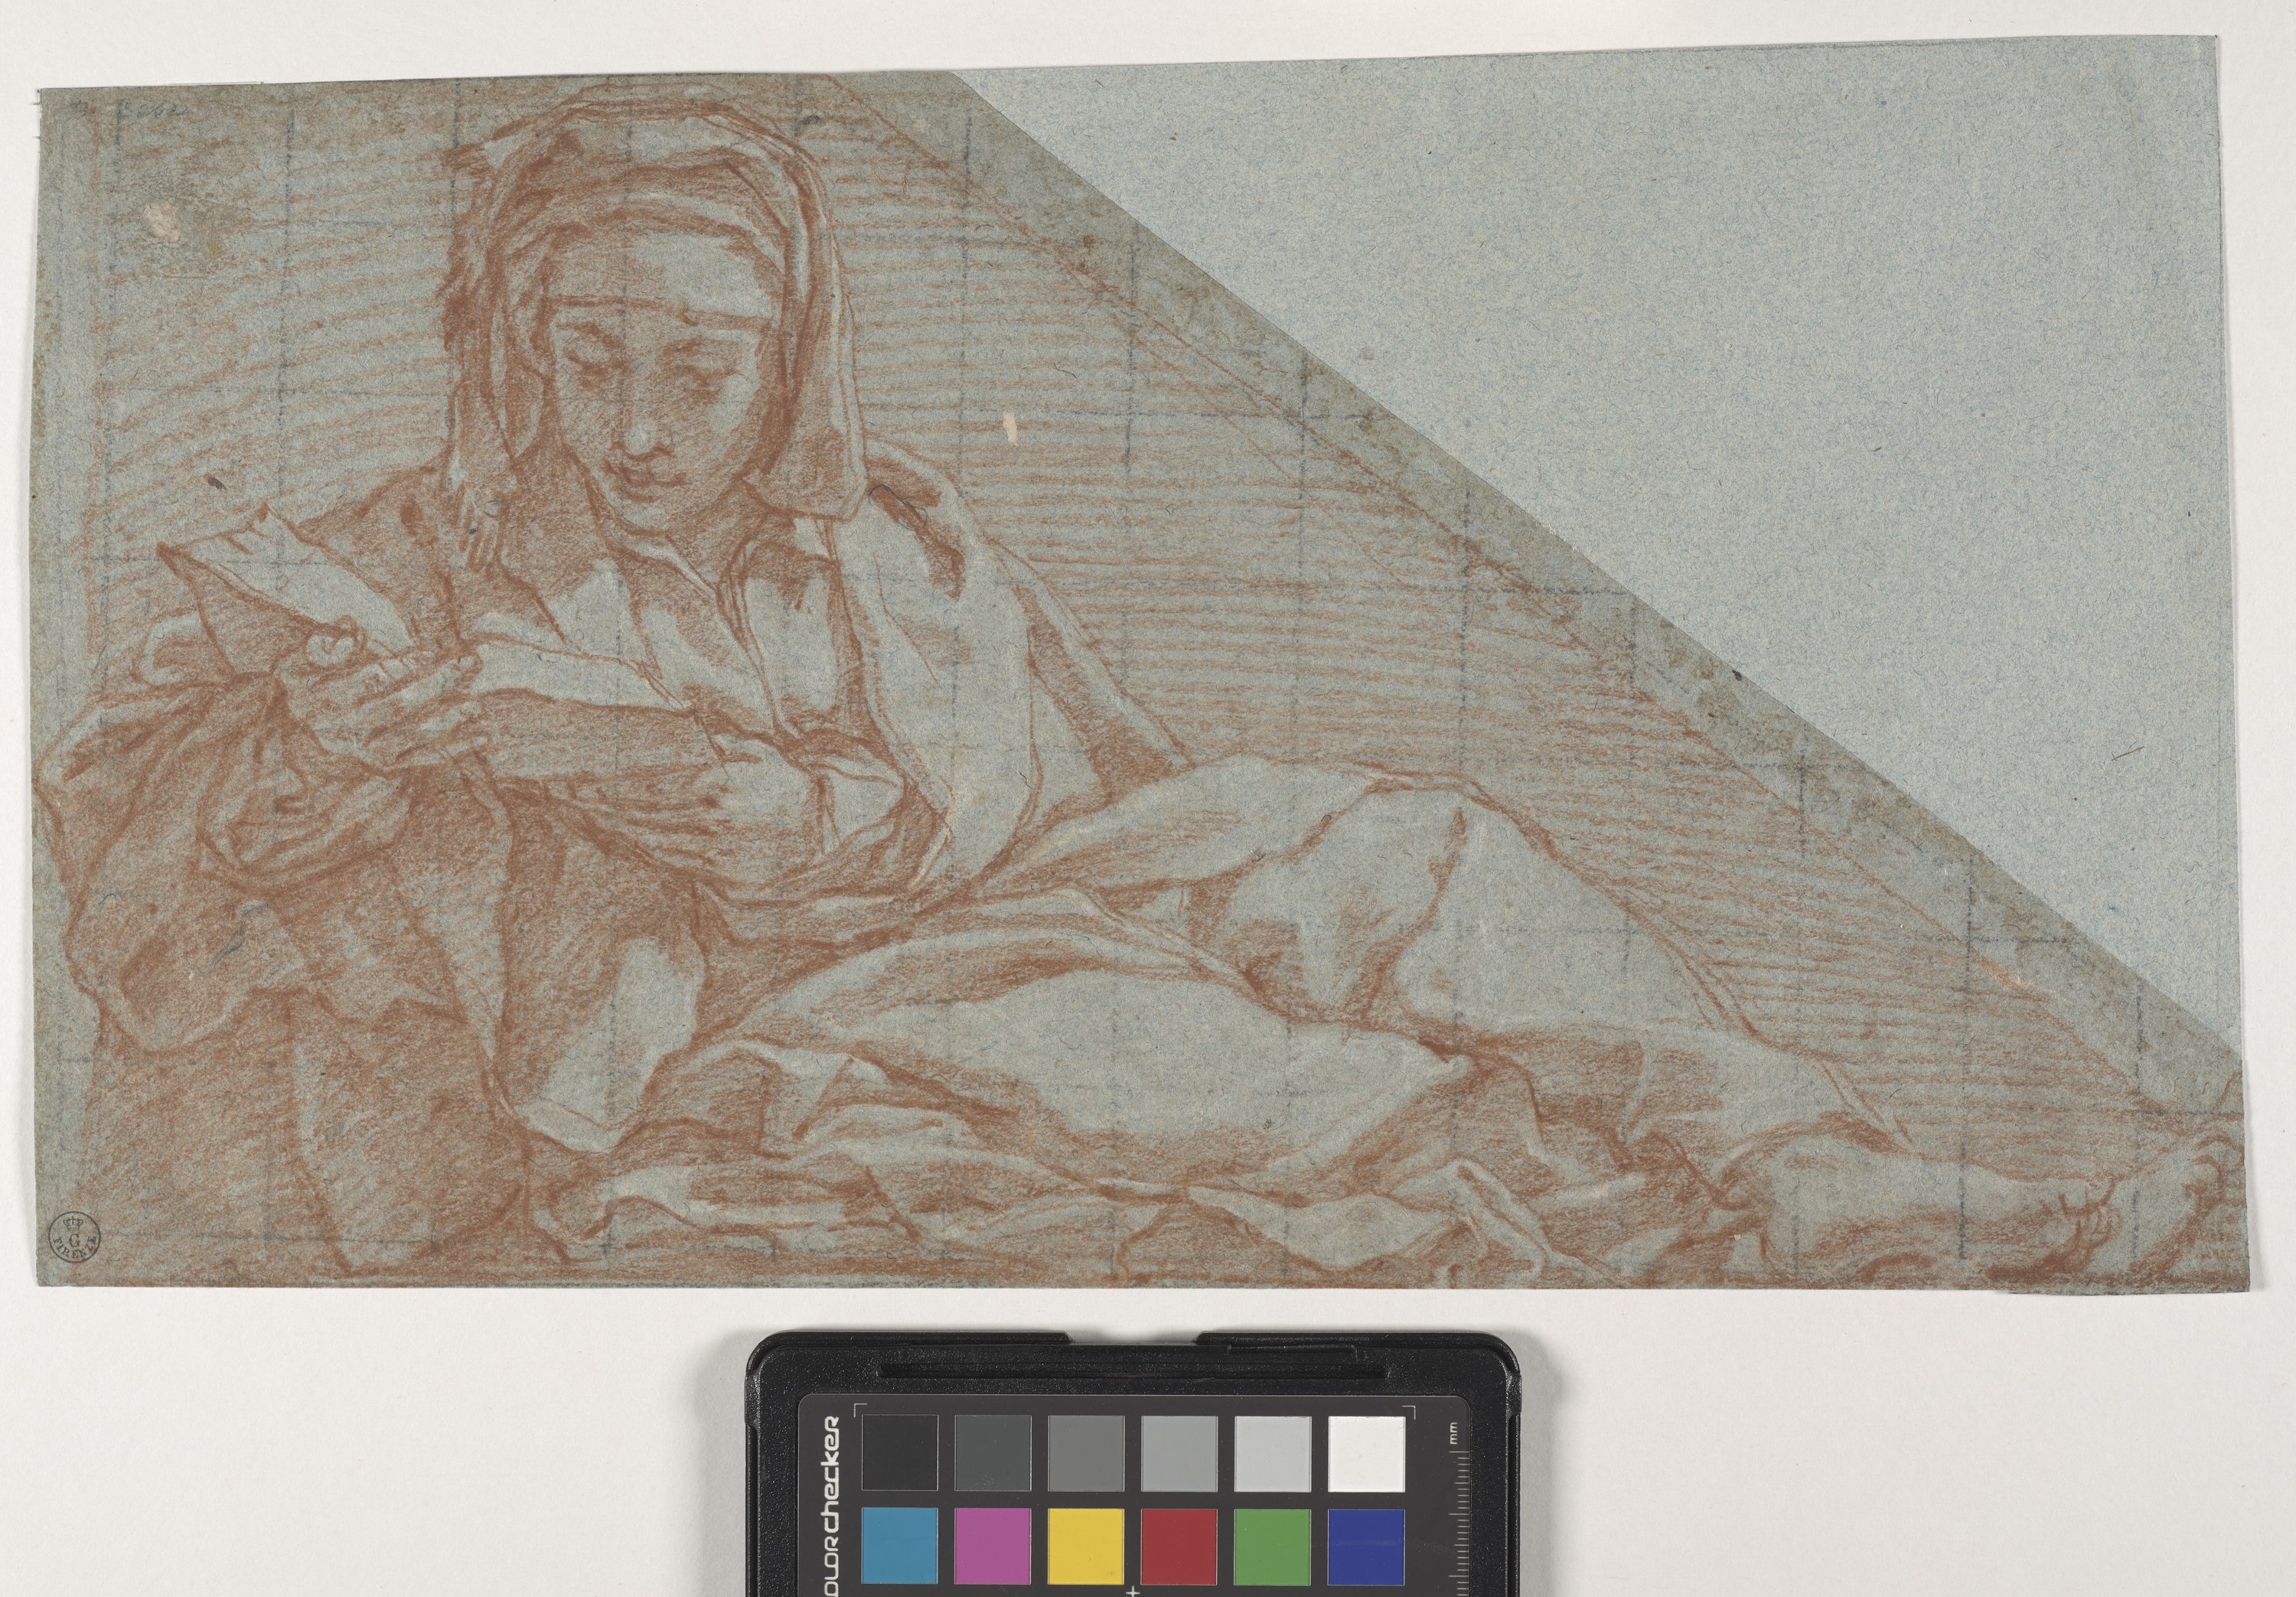 Studio di giovane seduto con in mano un libro (disegno) di Cesi Bartolomeo (fine/ inizio XVI/ XVII)